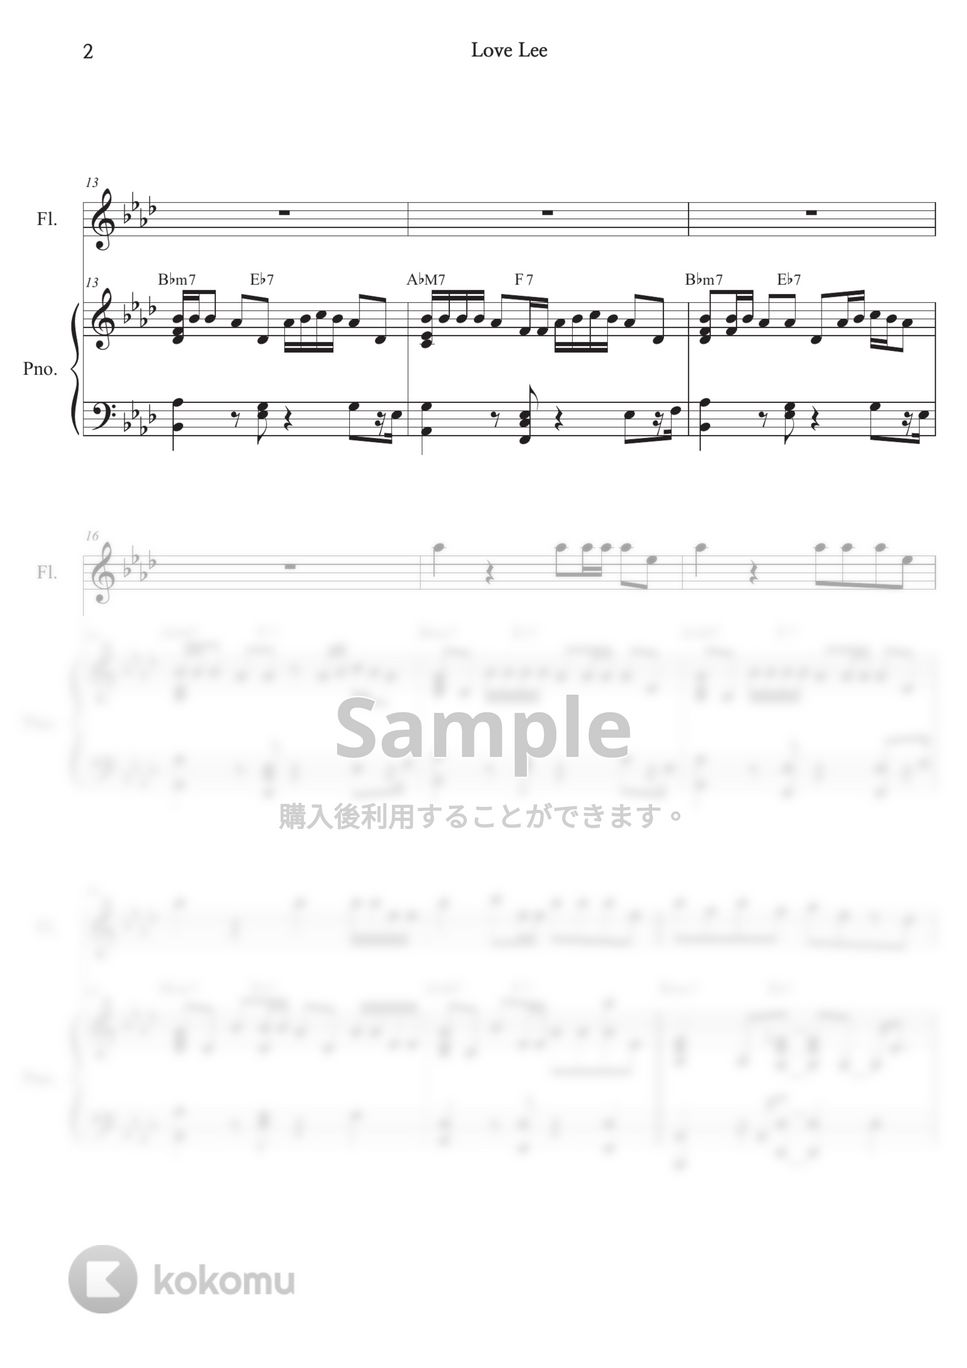 AKMU - Love Lee (Ensemble) by Melonical